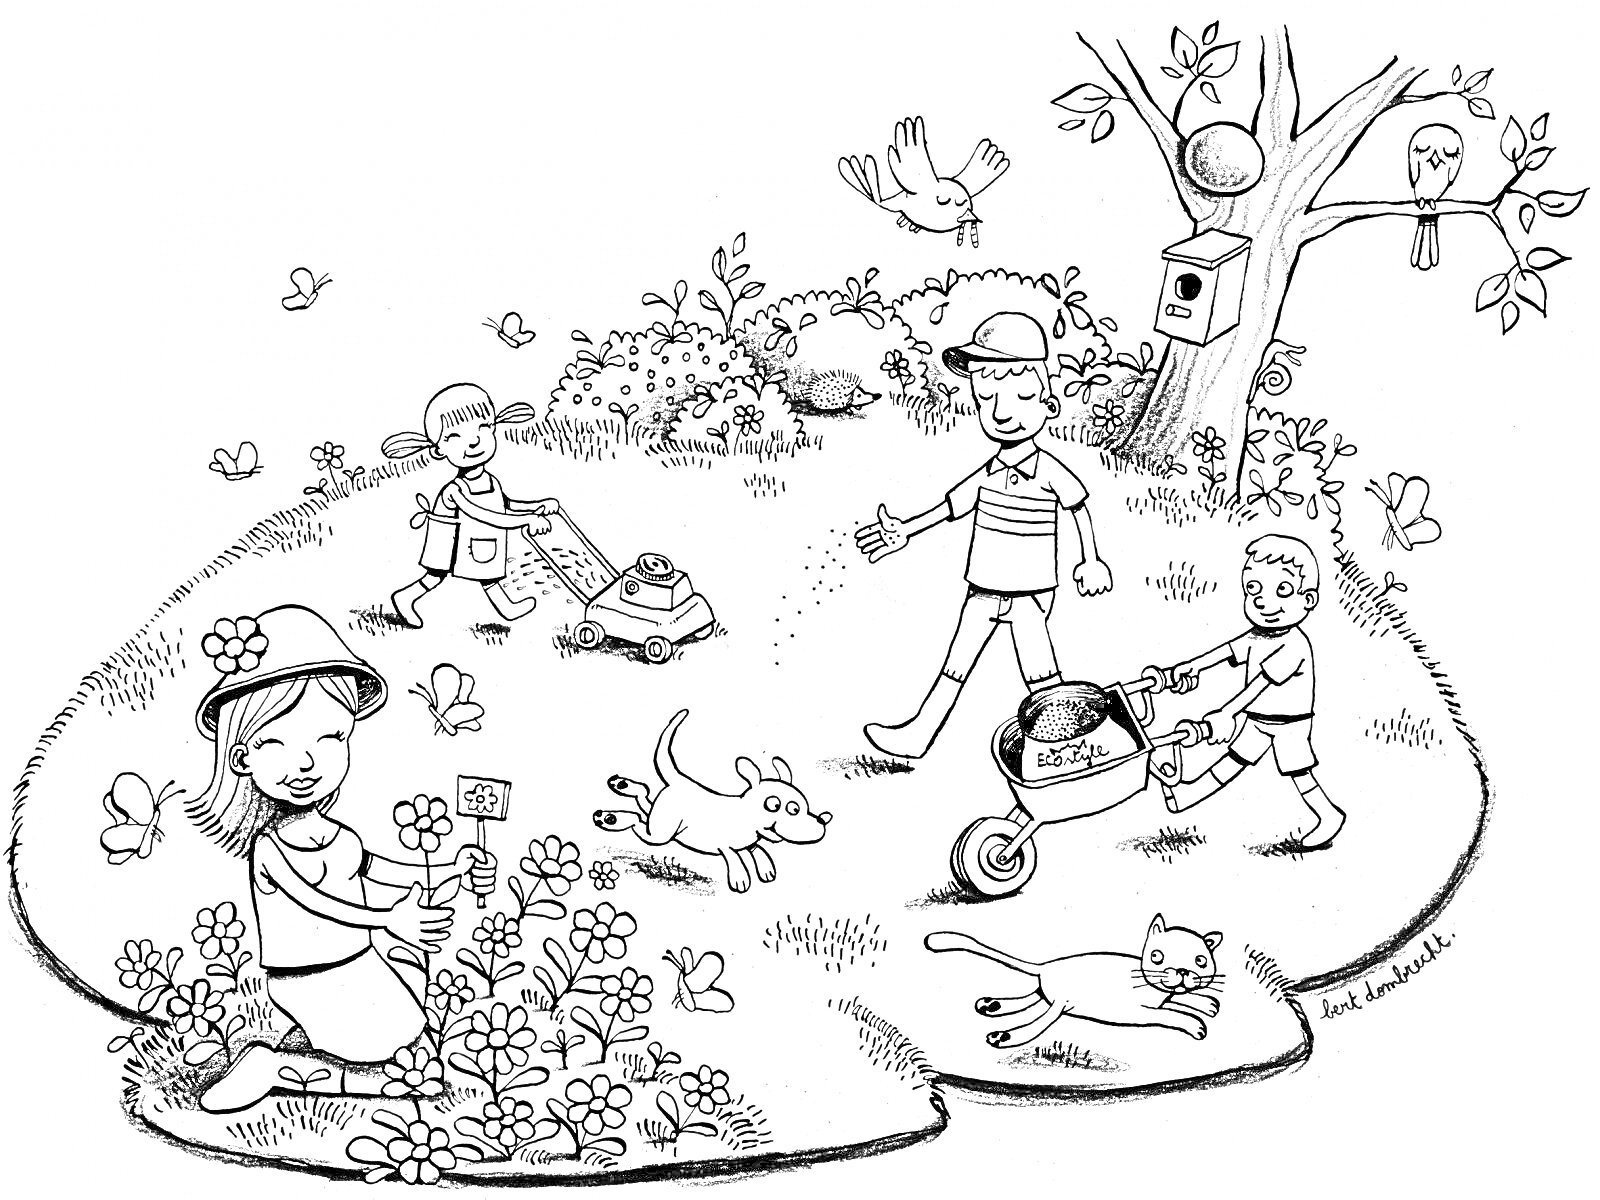 Садовая сцена с детьми, взрослыми, животными и растениями